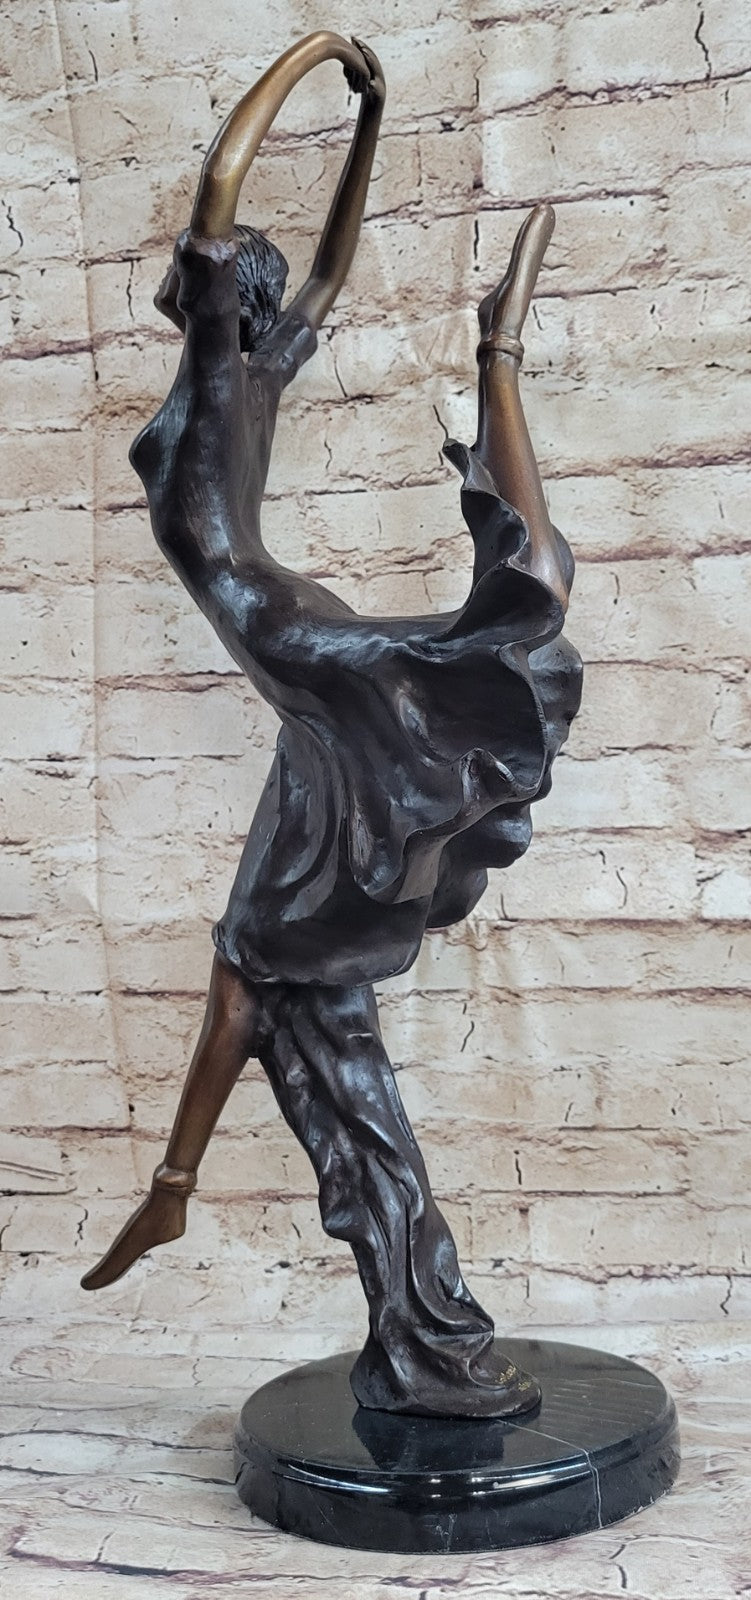 Bronze Wild Modern Contemporary Dance or Dancing sculpture by artist Collett